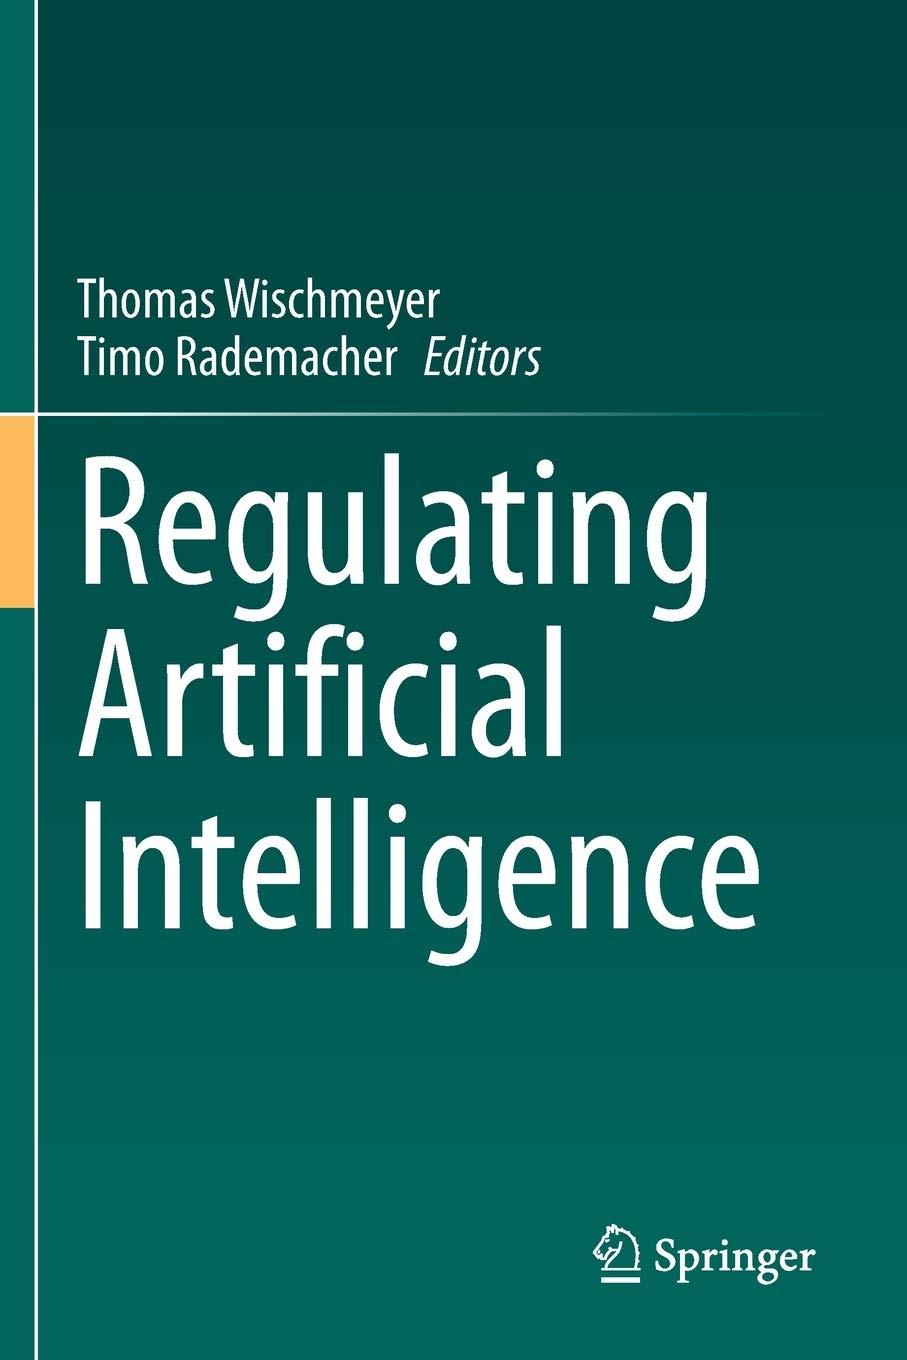 regulating artificial intelligence 1st edition thomas wischmeyer , timo rademacher 3030323633, 978-3030323639